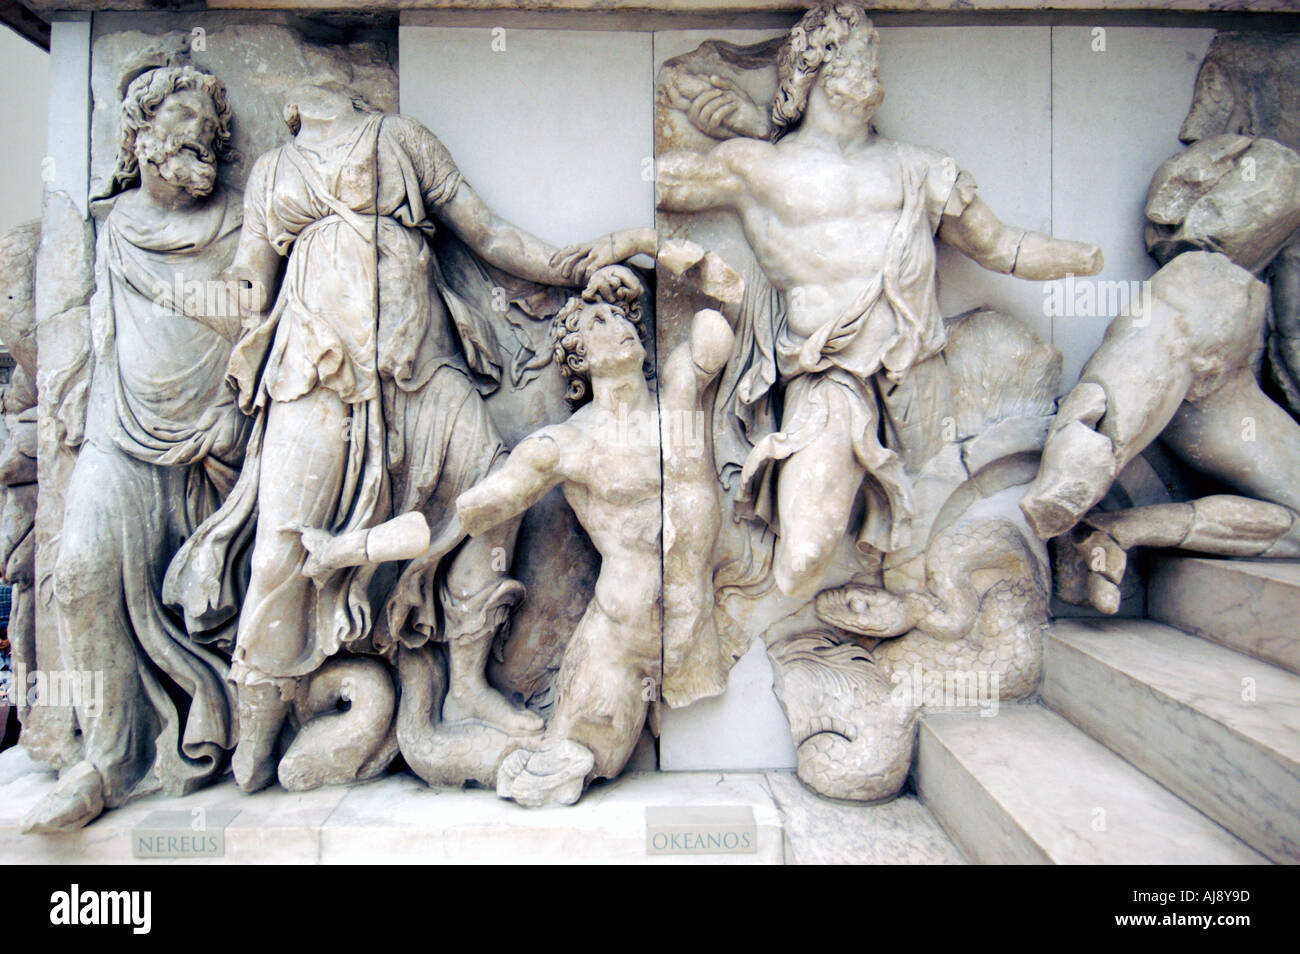 Détail de l'autel de Pergame au Musée Pergamon de Berlin Allemagne Banque D'Images